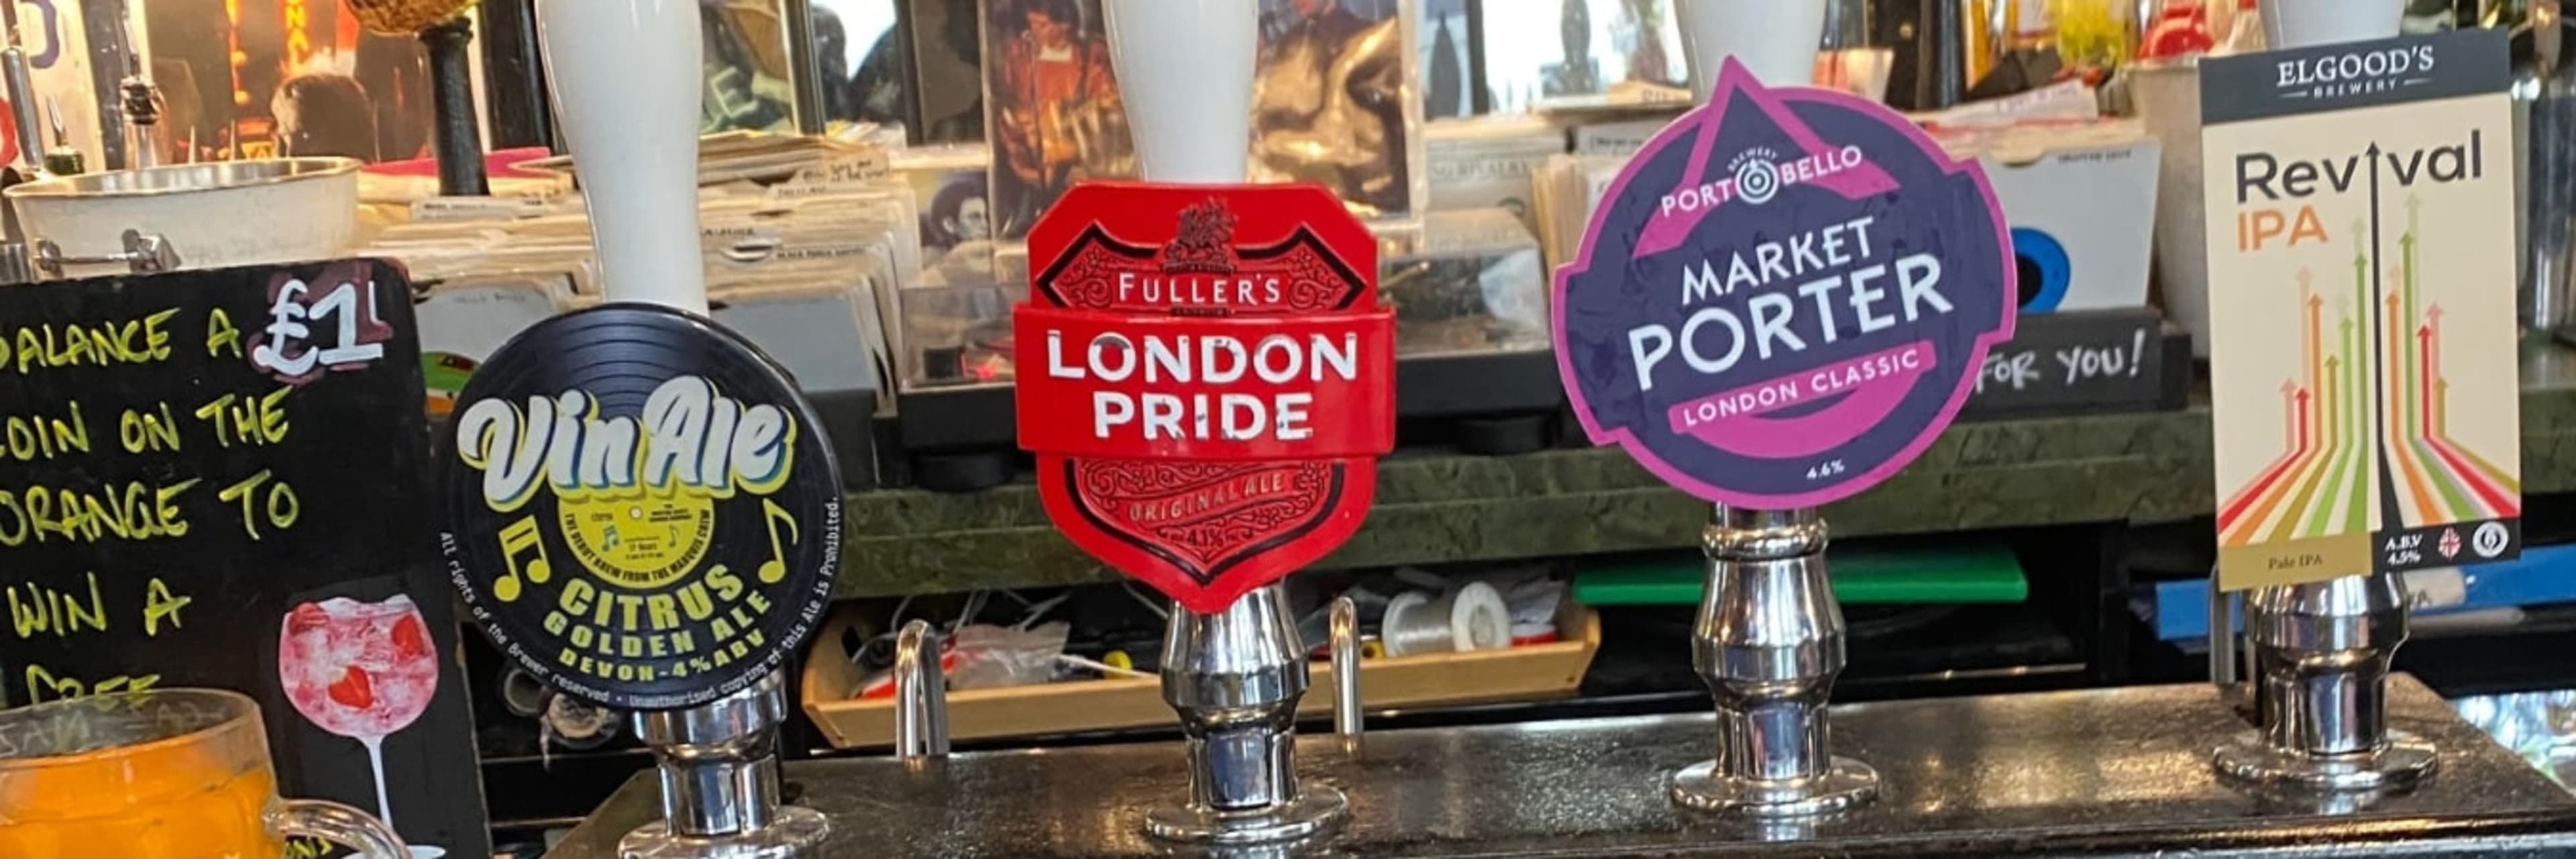 Ale pumps along a bar in a London pub.